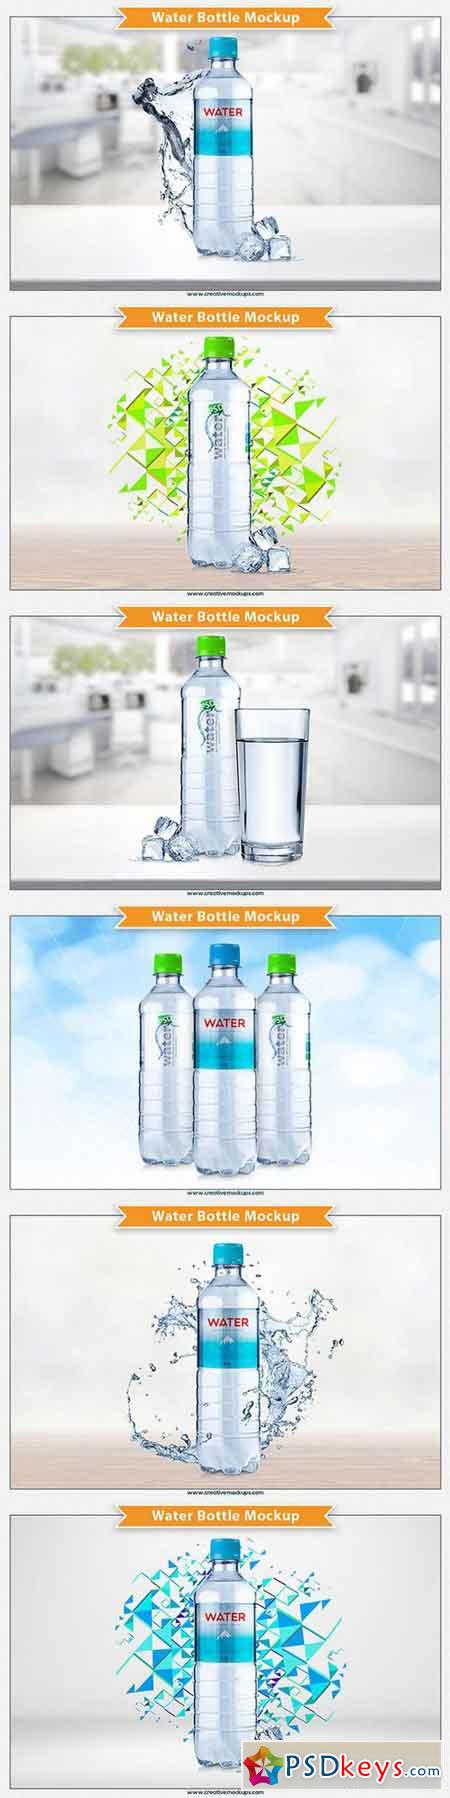 Water Bottle Mockup 649320